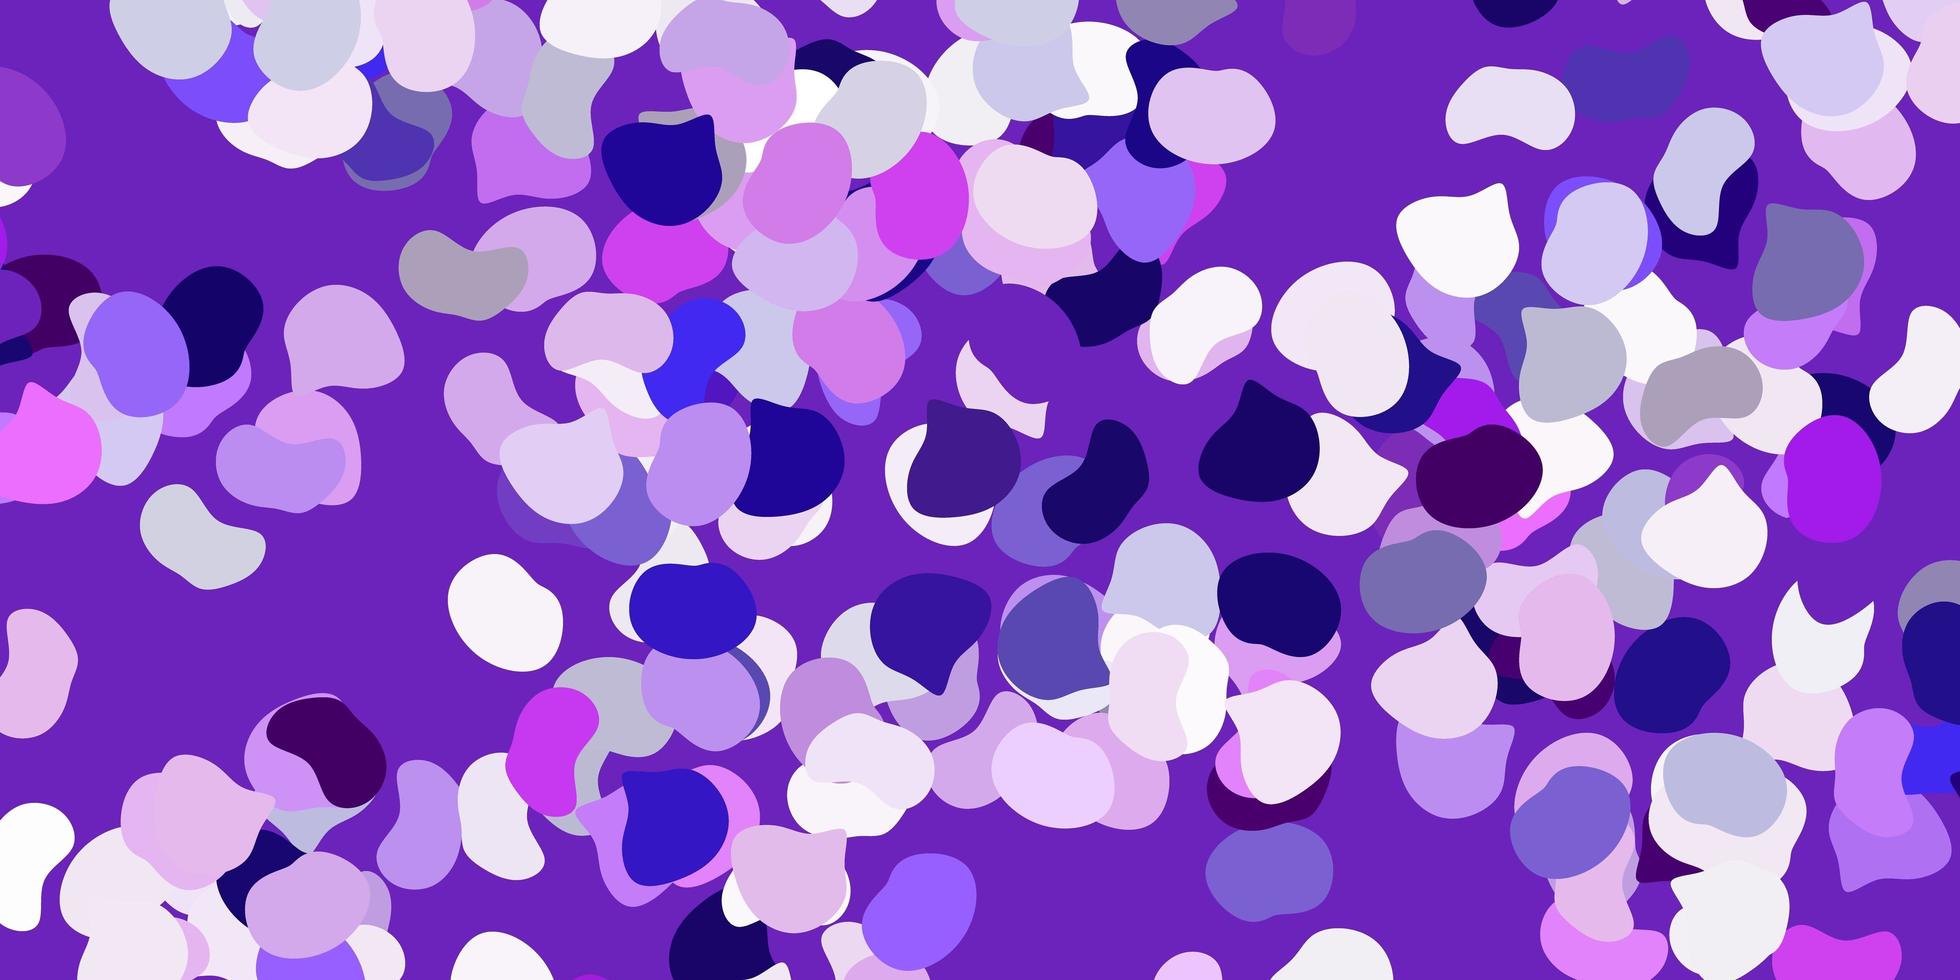 toile de fond de vecteur violet clair avec des formes chaotiques.